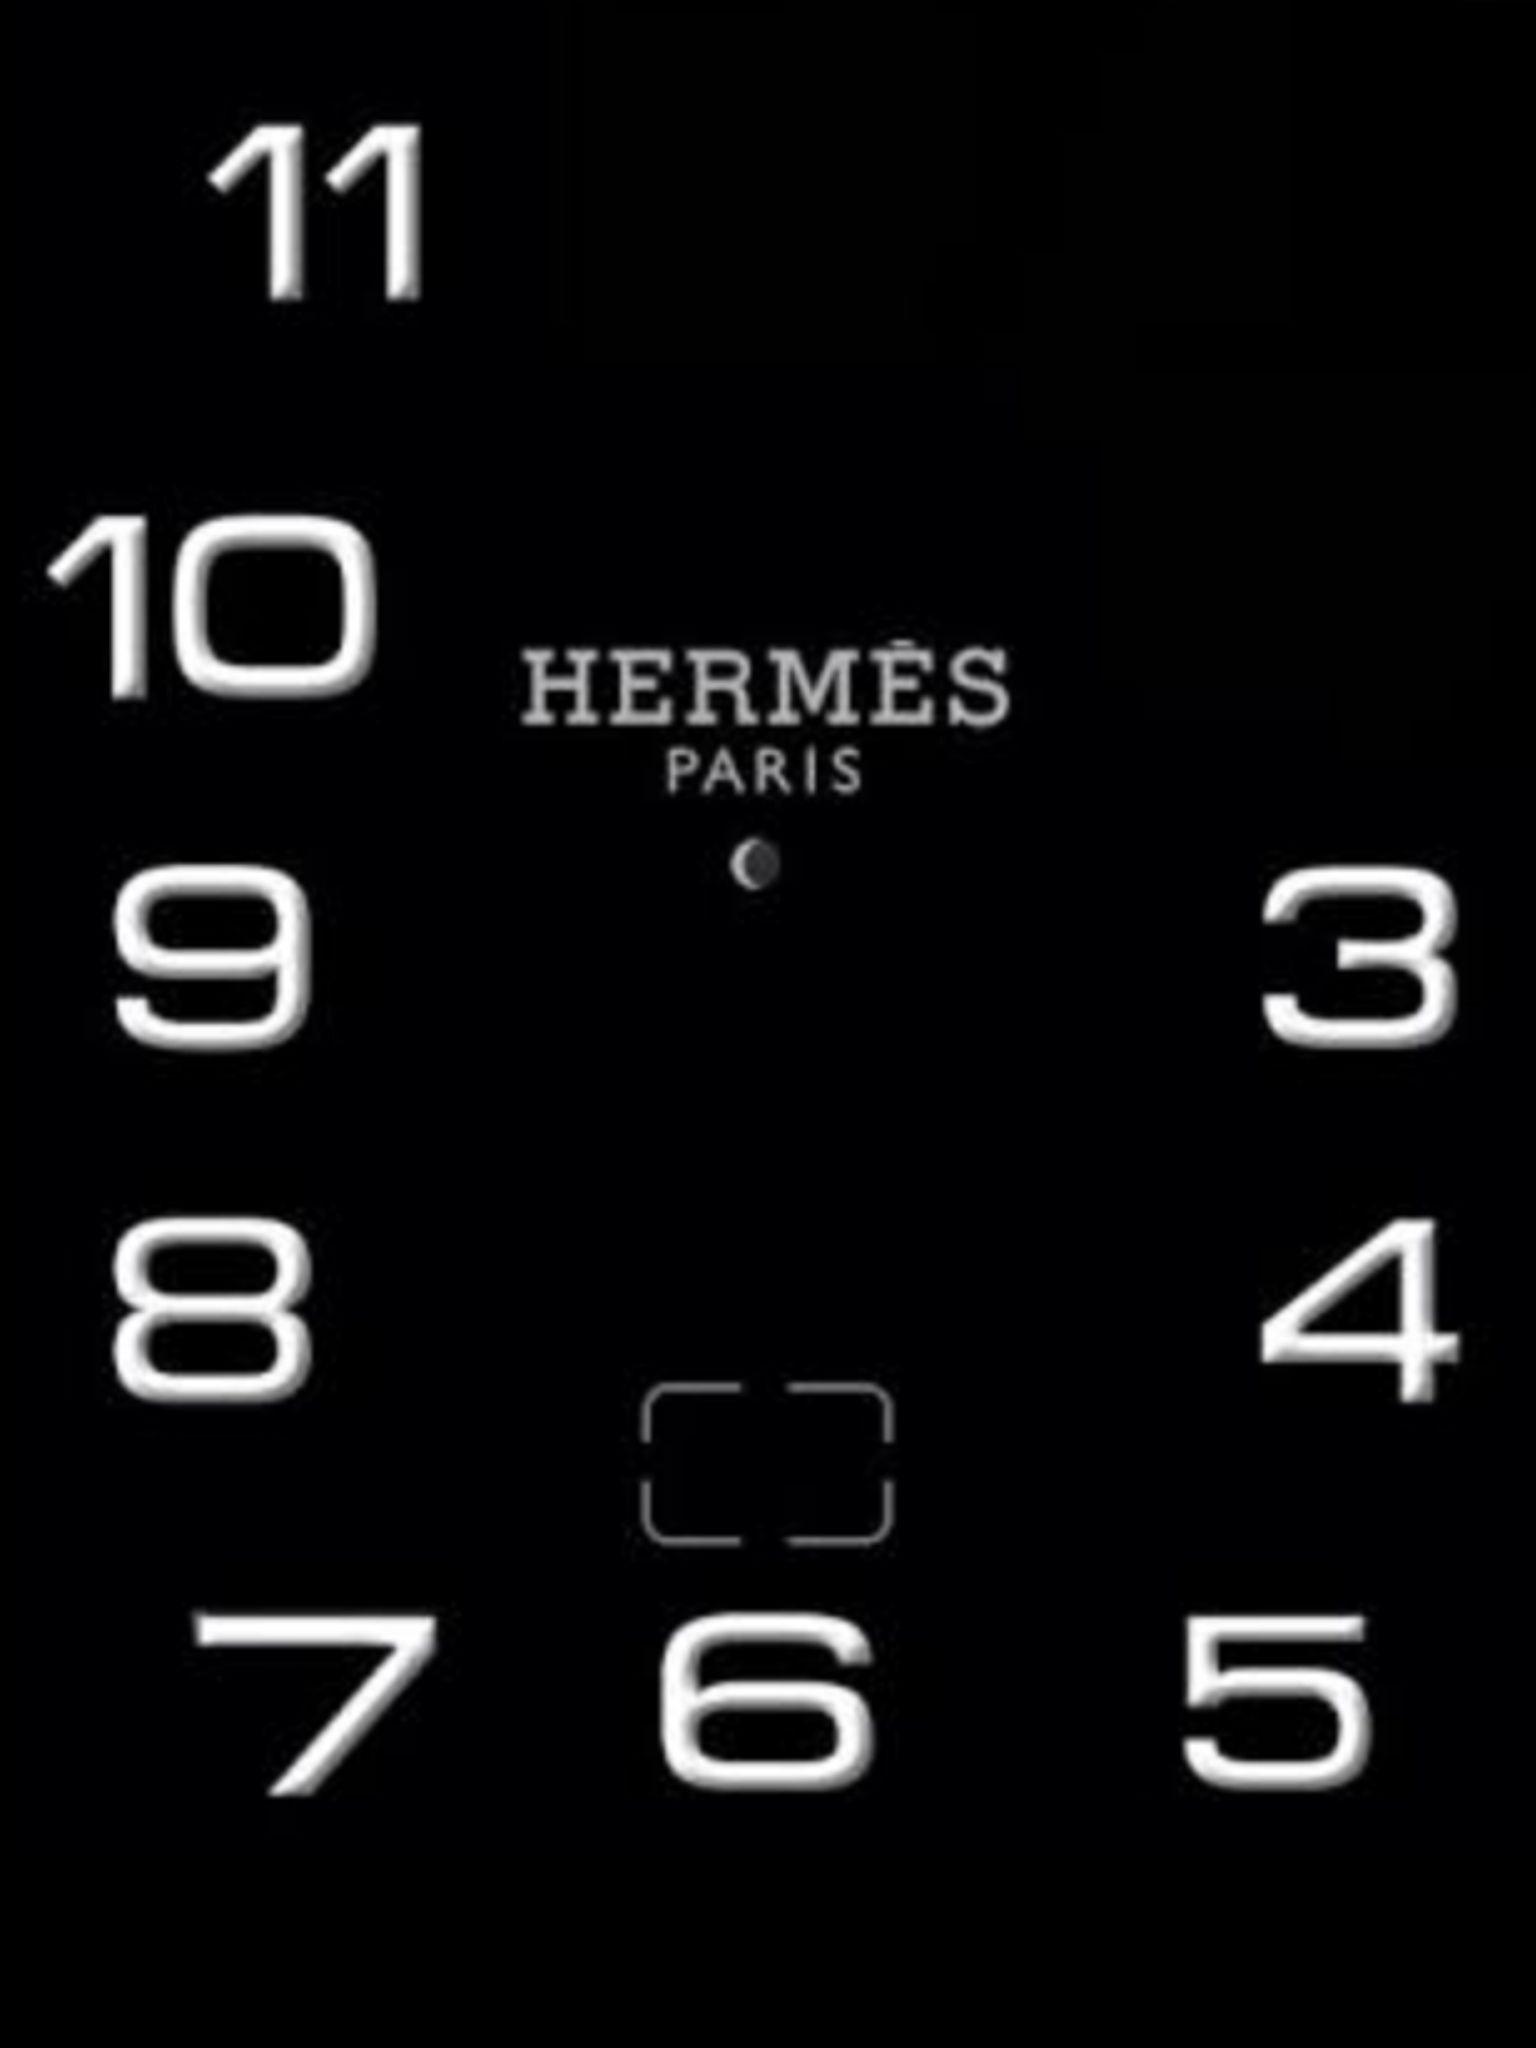 Hermes Logo Black Background | vlr.eng.br